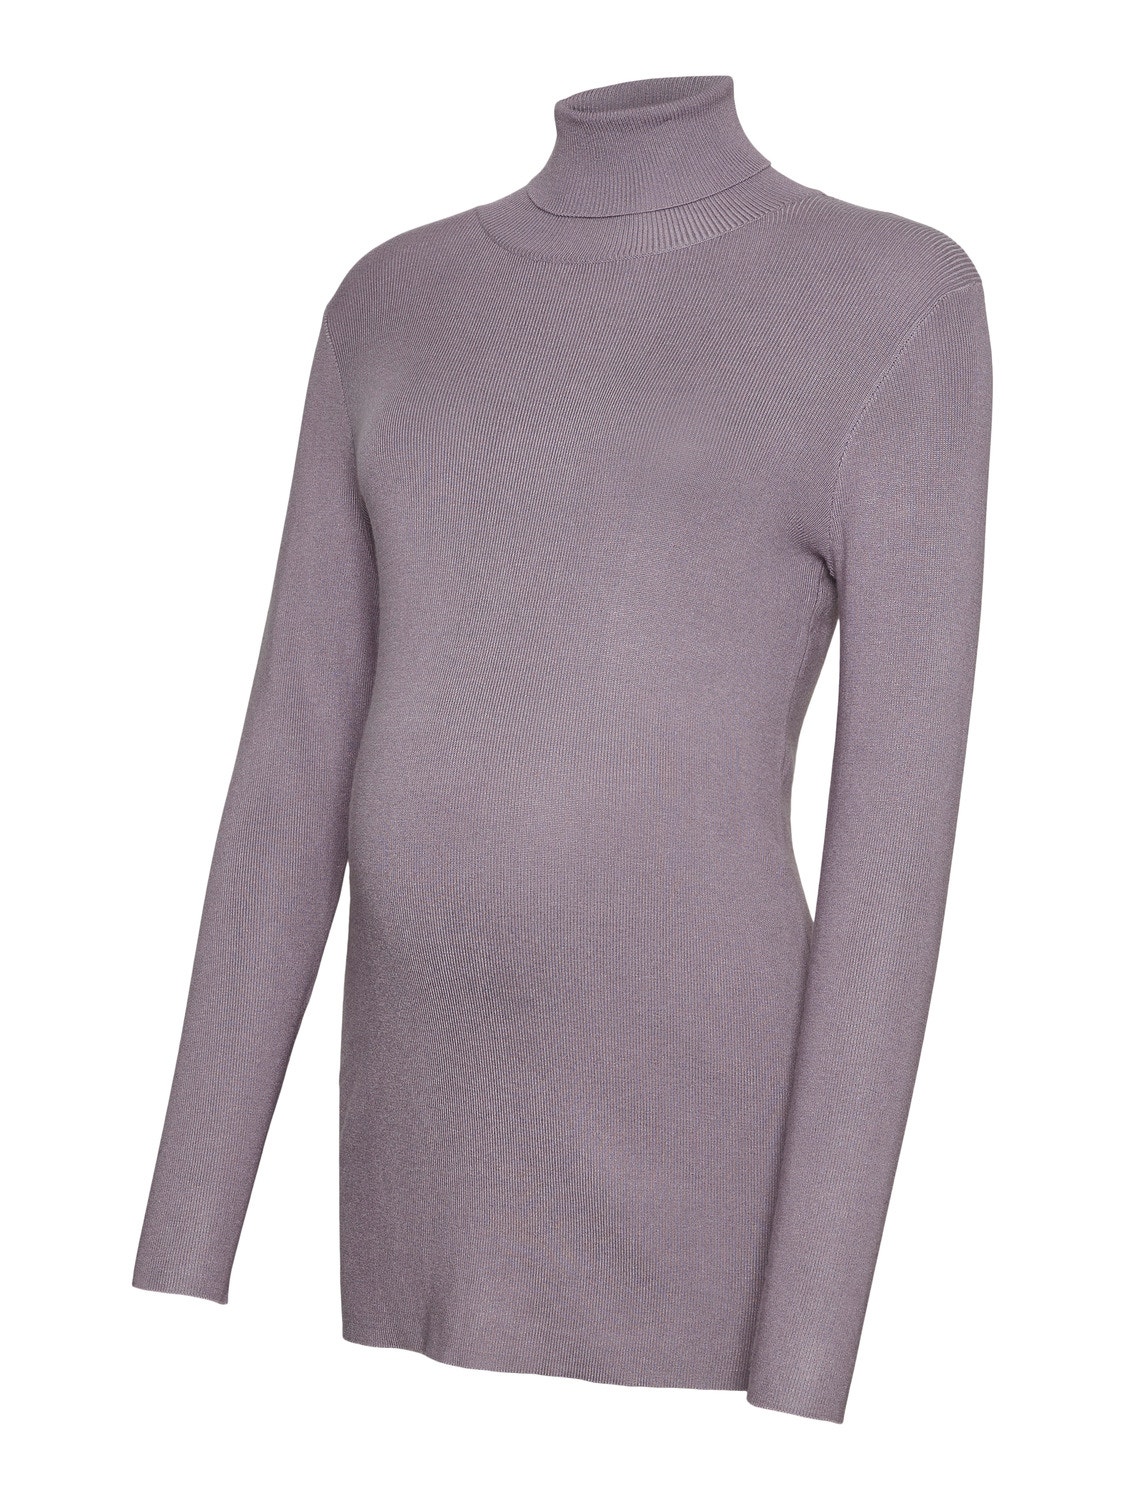 MAMA.LICIOUS Haut à col roulé tricoté -Purple Ash - 20013064